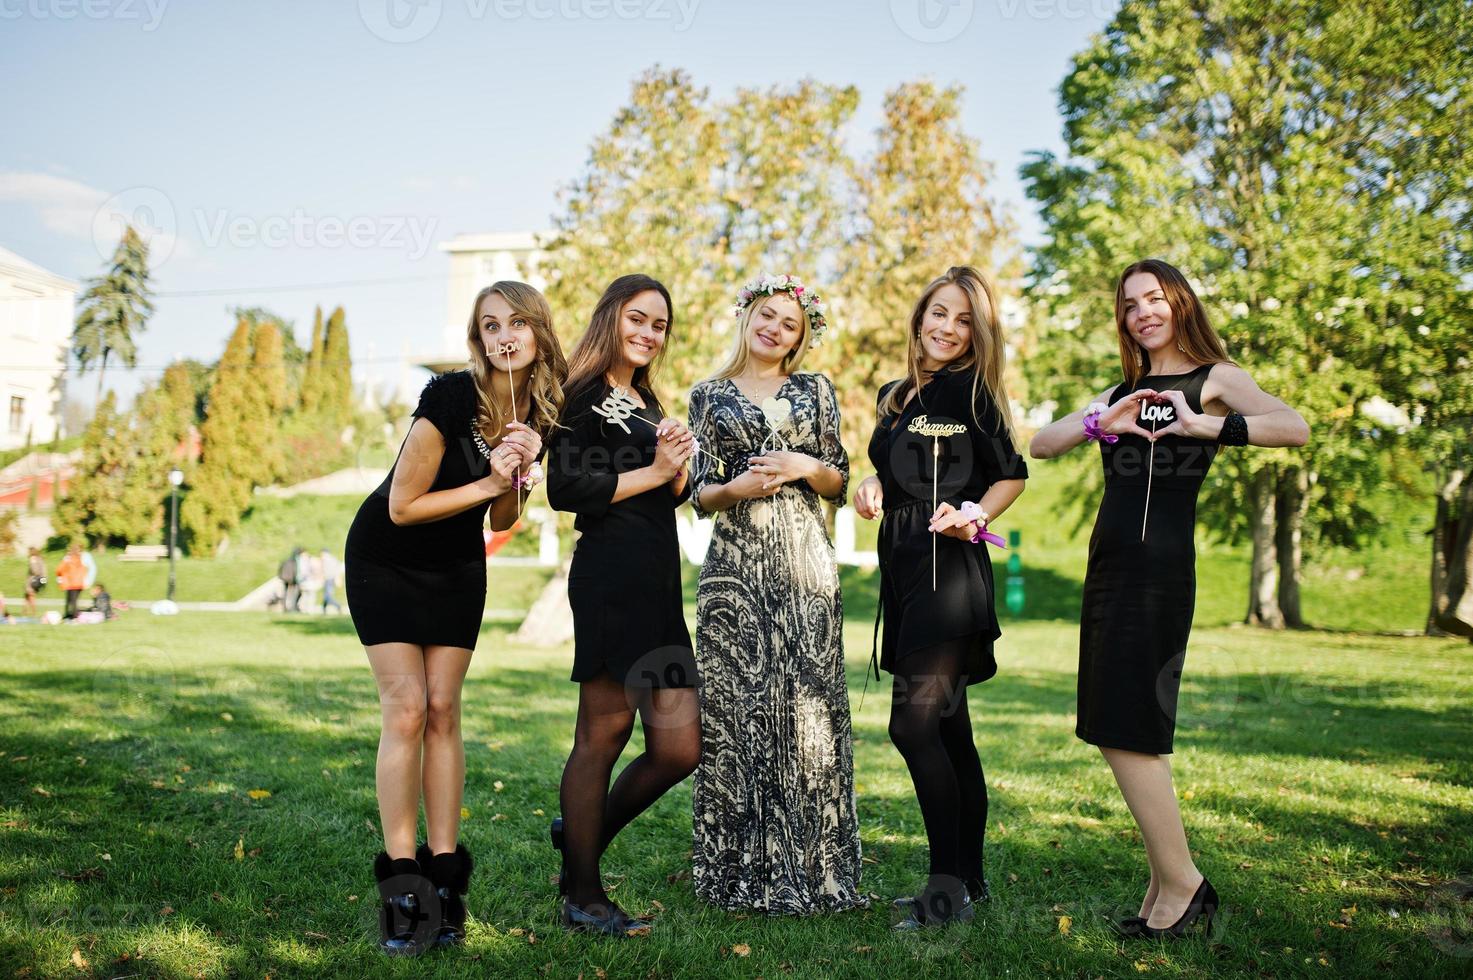 vijf meisjes dragen op zwart plezier op vrijgezellenfeest. foto